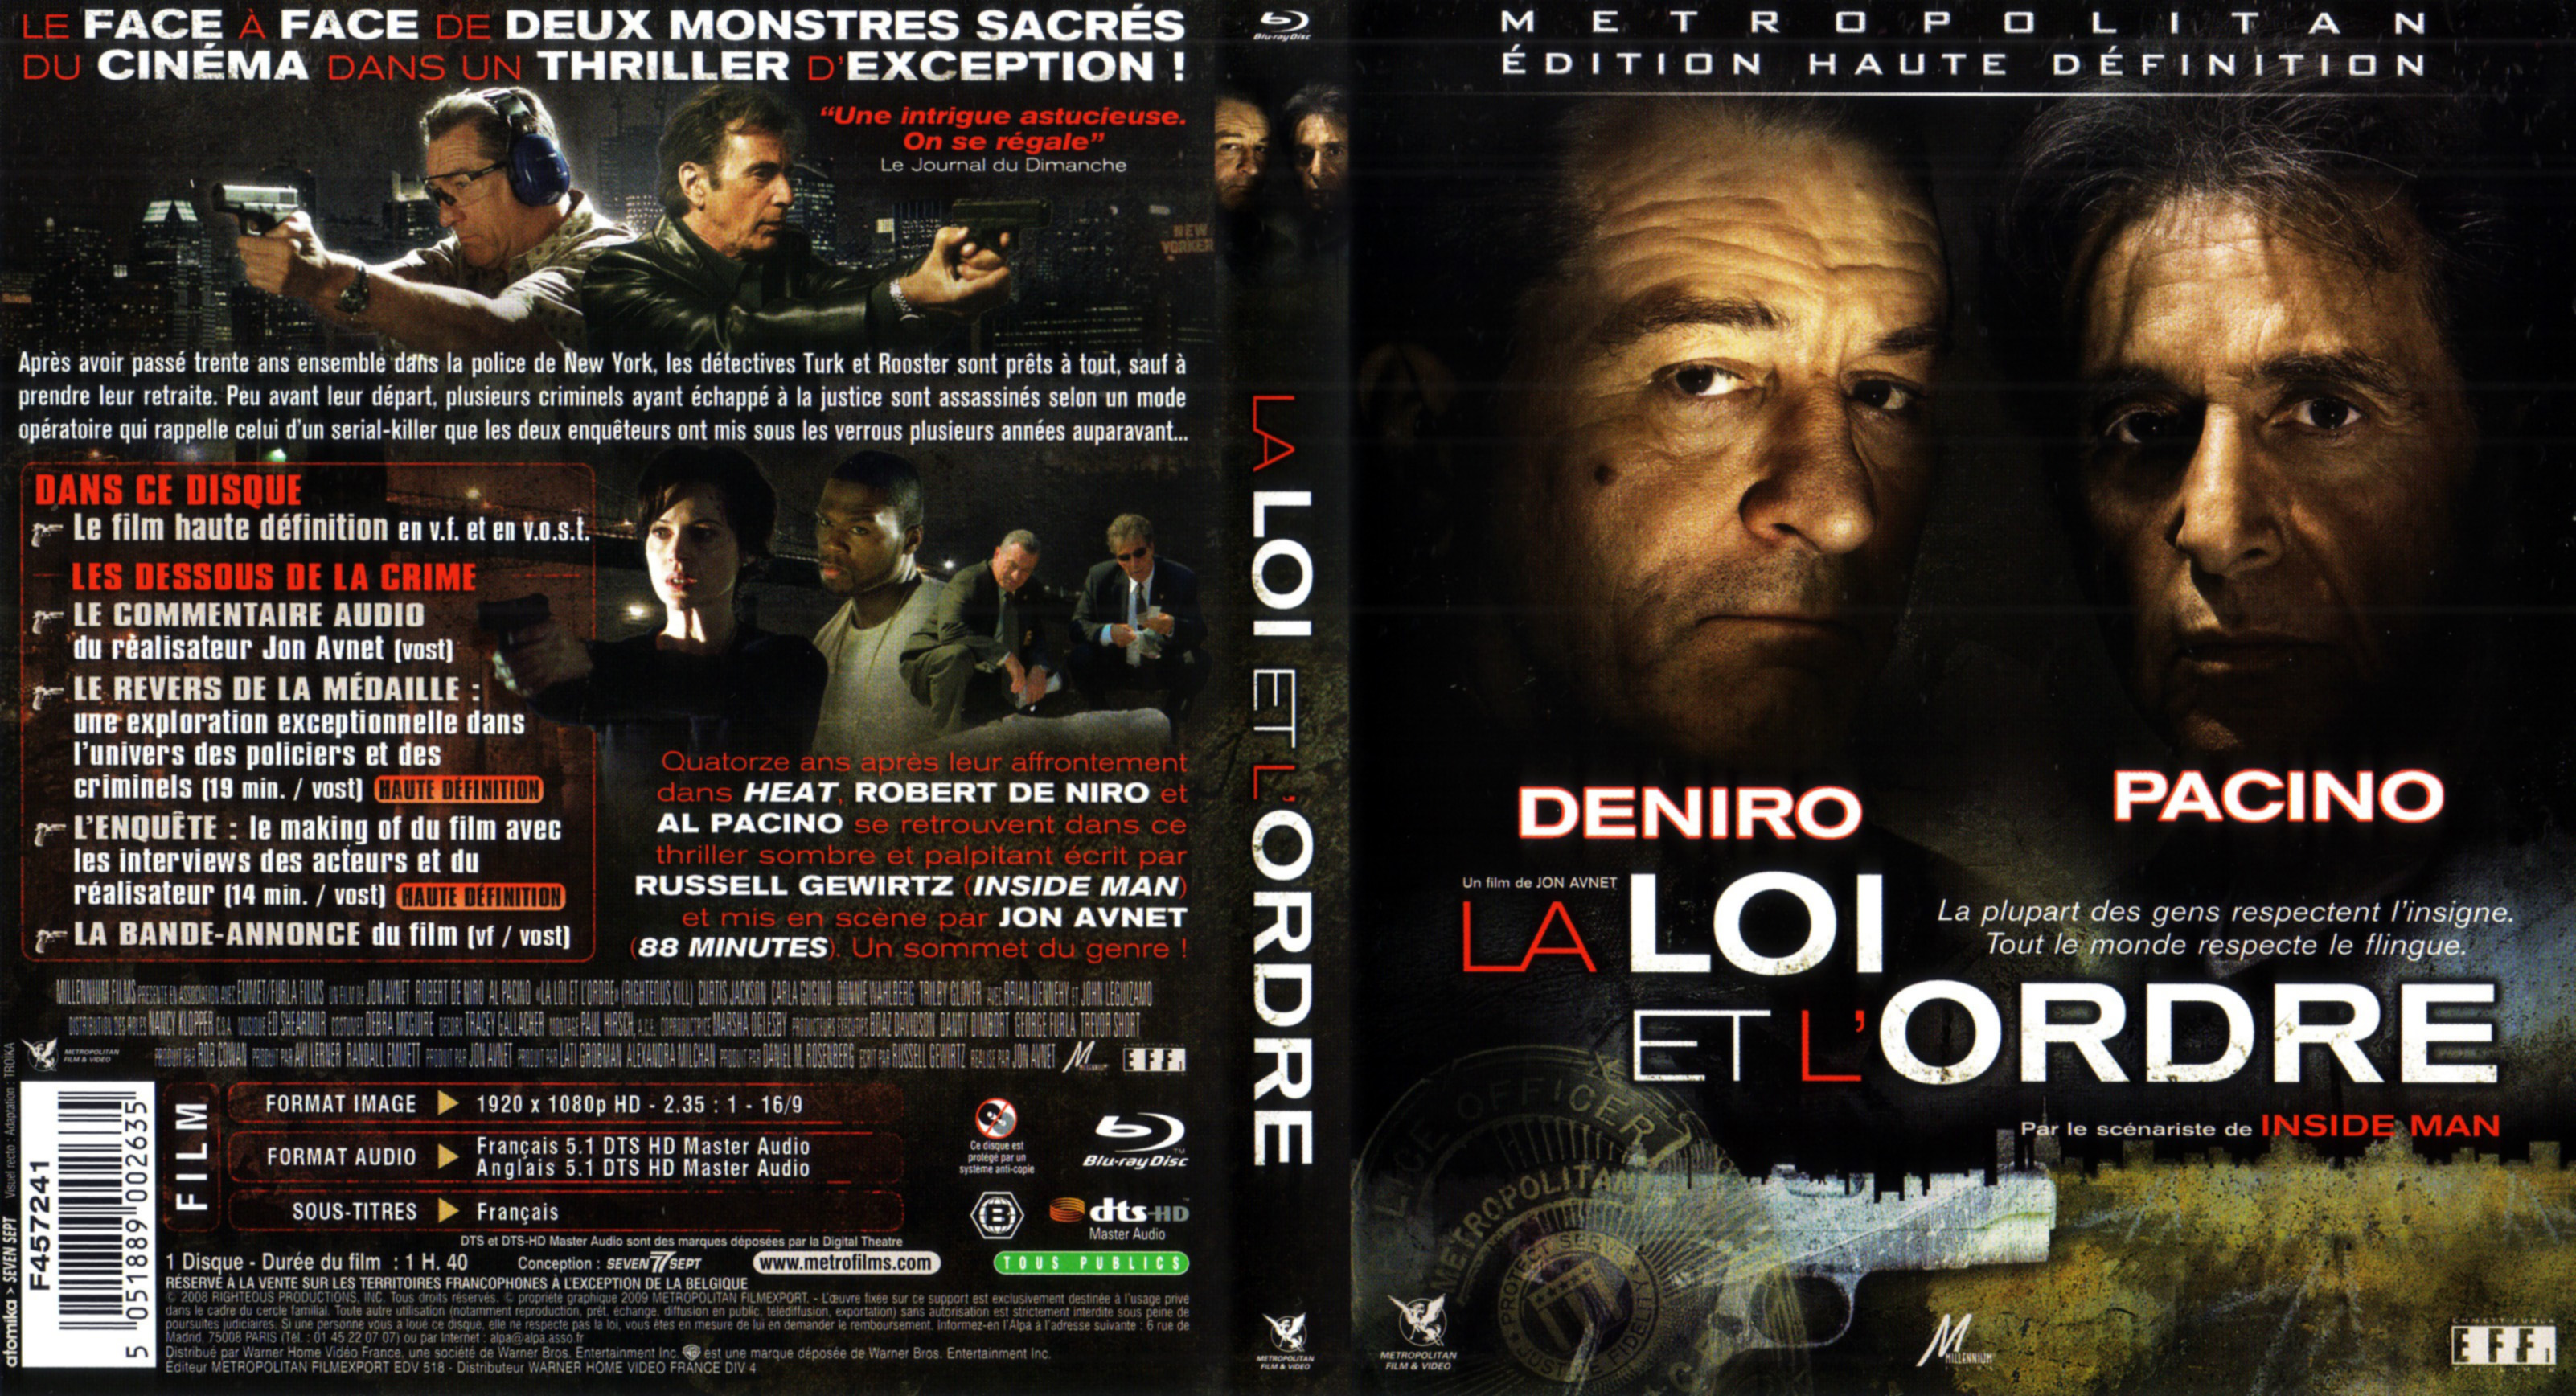 Jaquette DVD La loi et l